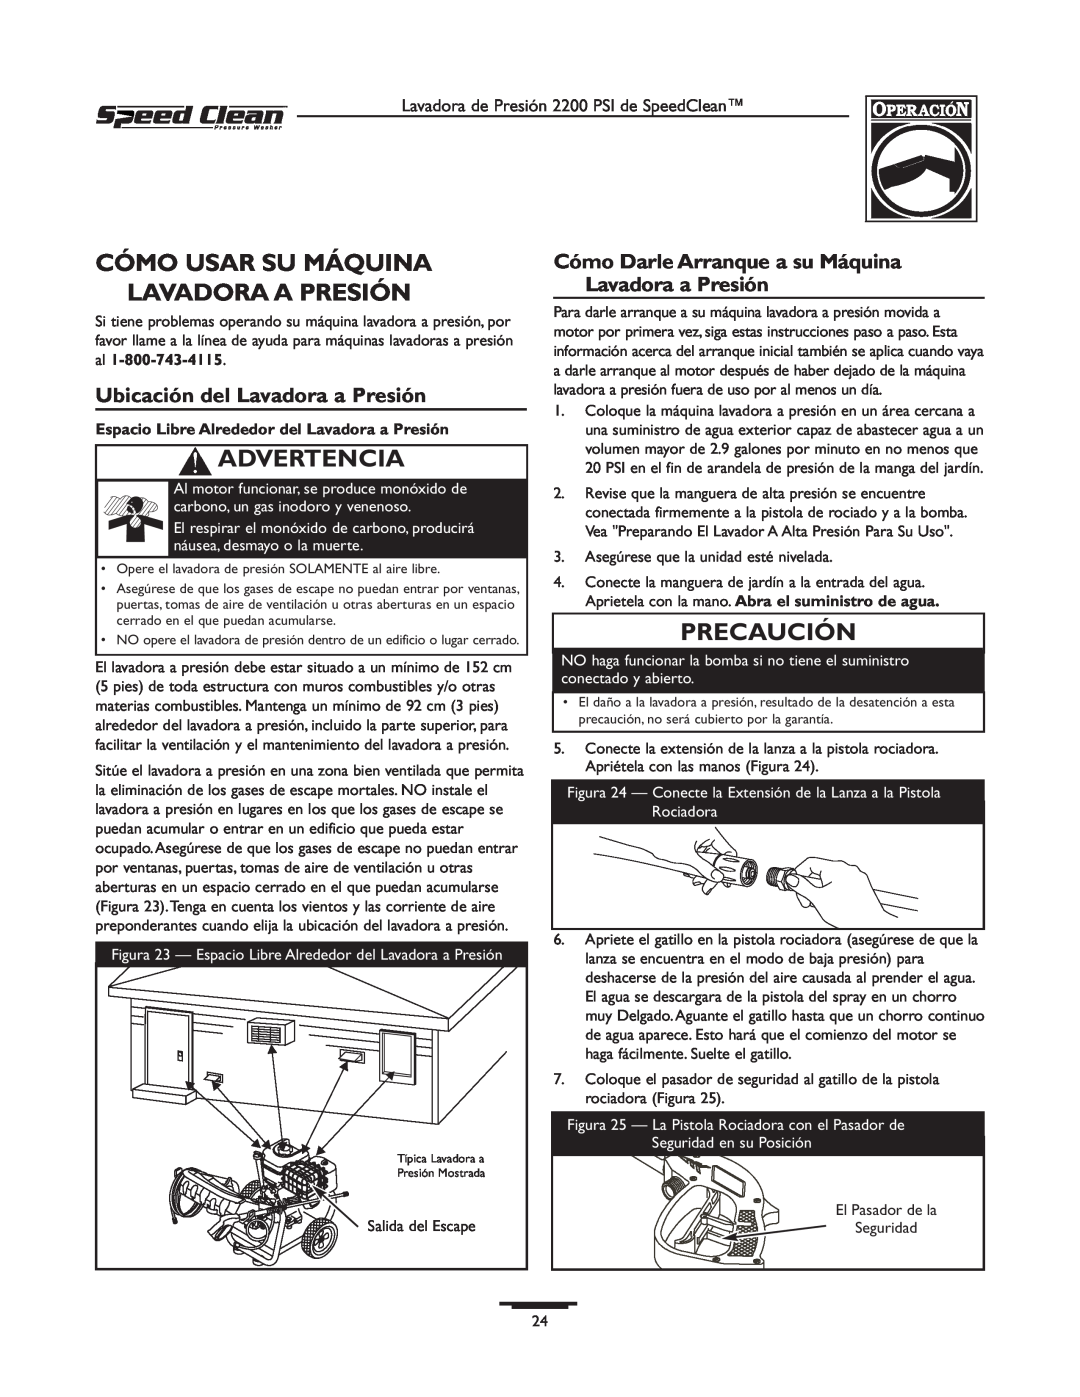 Briggs & Stratton 020239-0 Cómo Usar Su Máquina Lavadora A Presión, Ubicación del Lavadora a Presión, Advertencia 